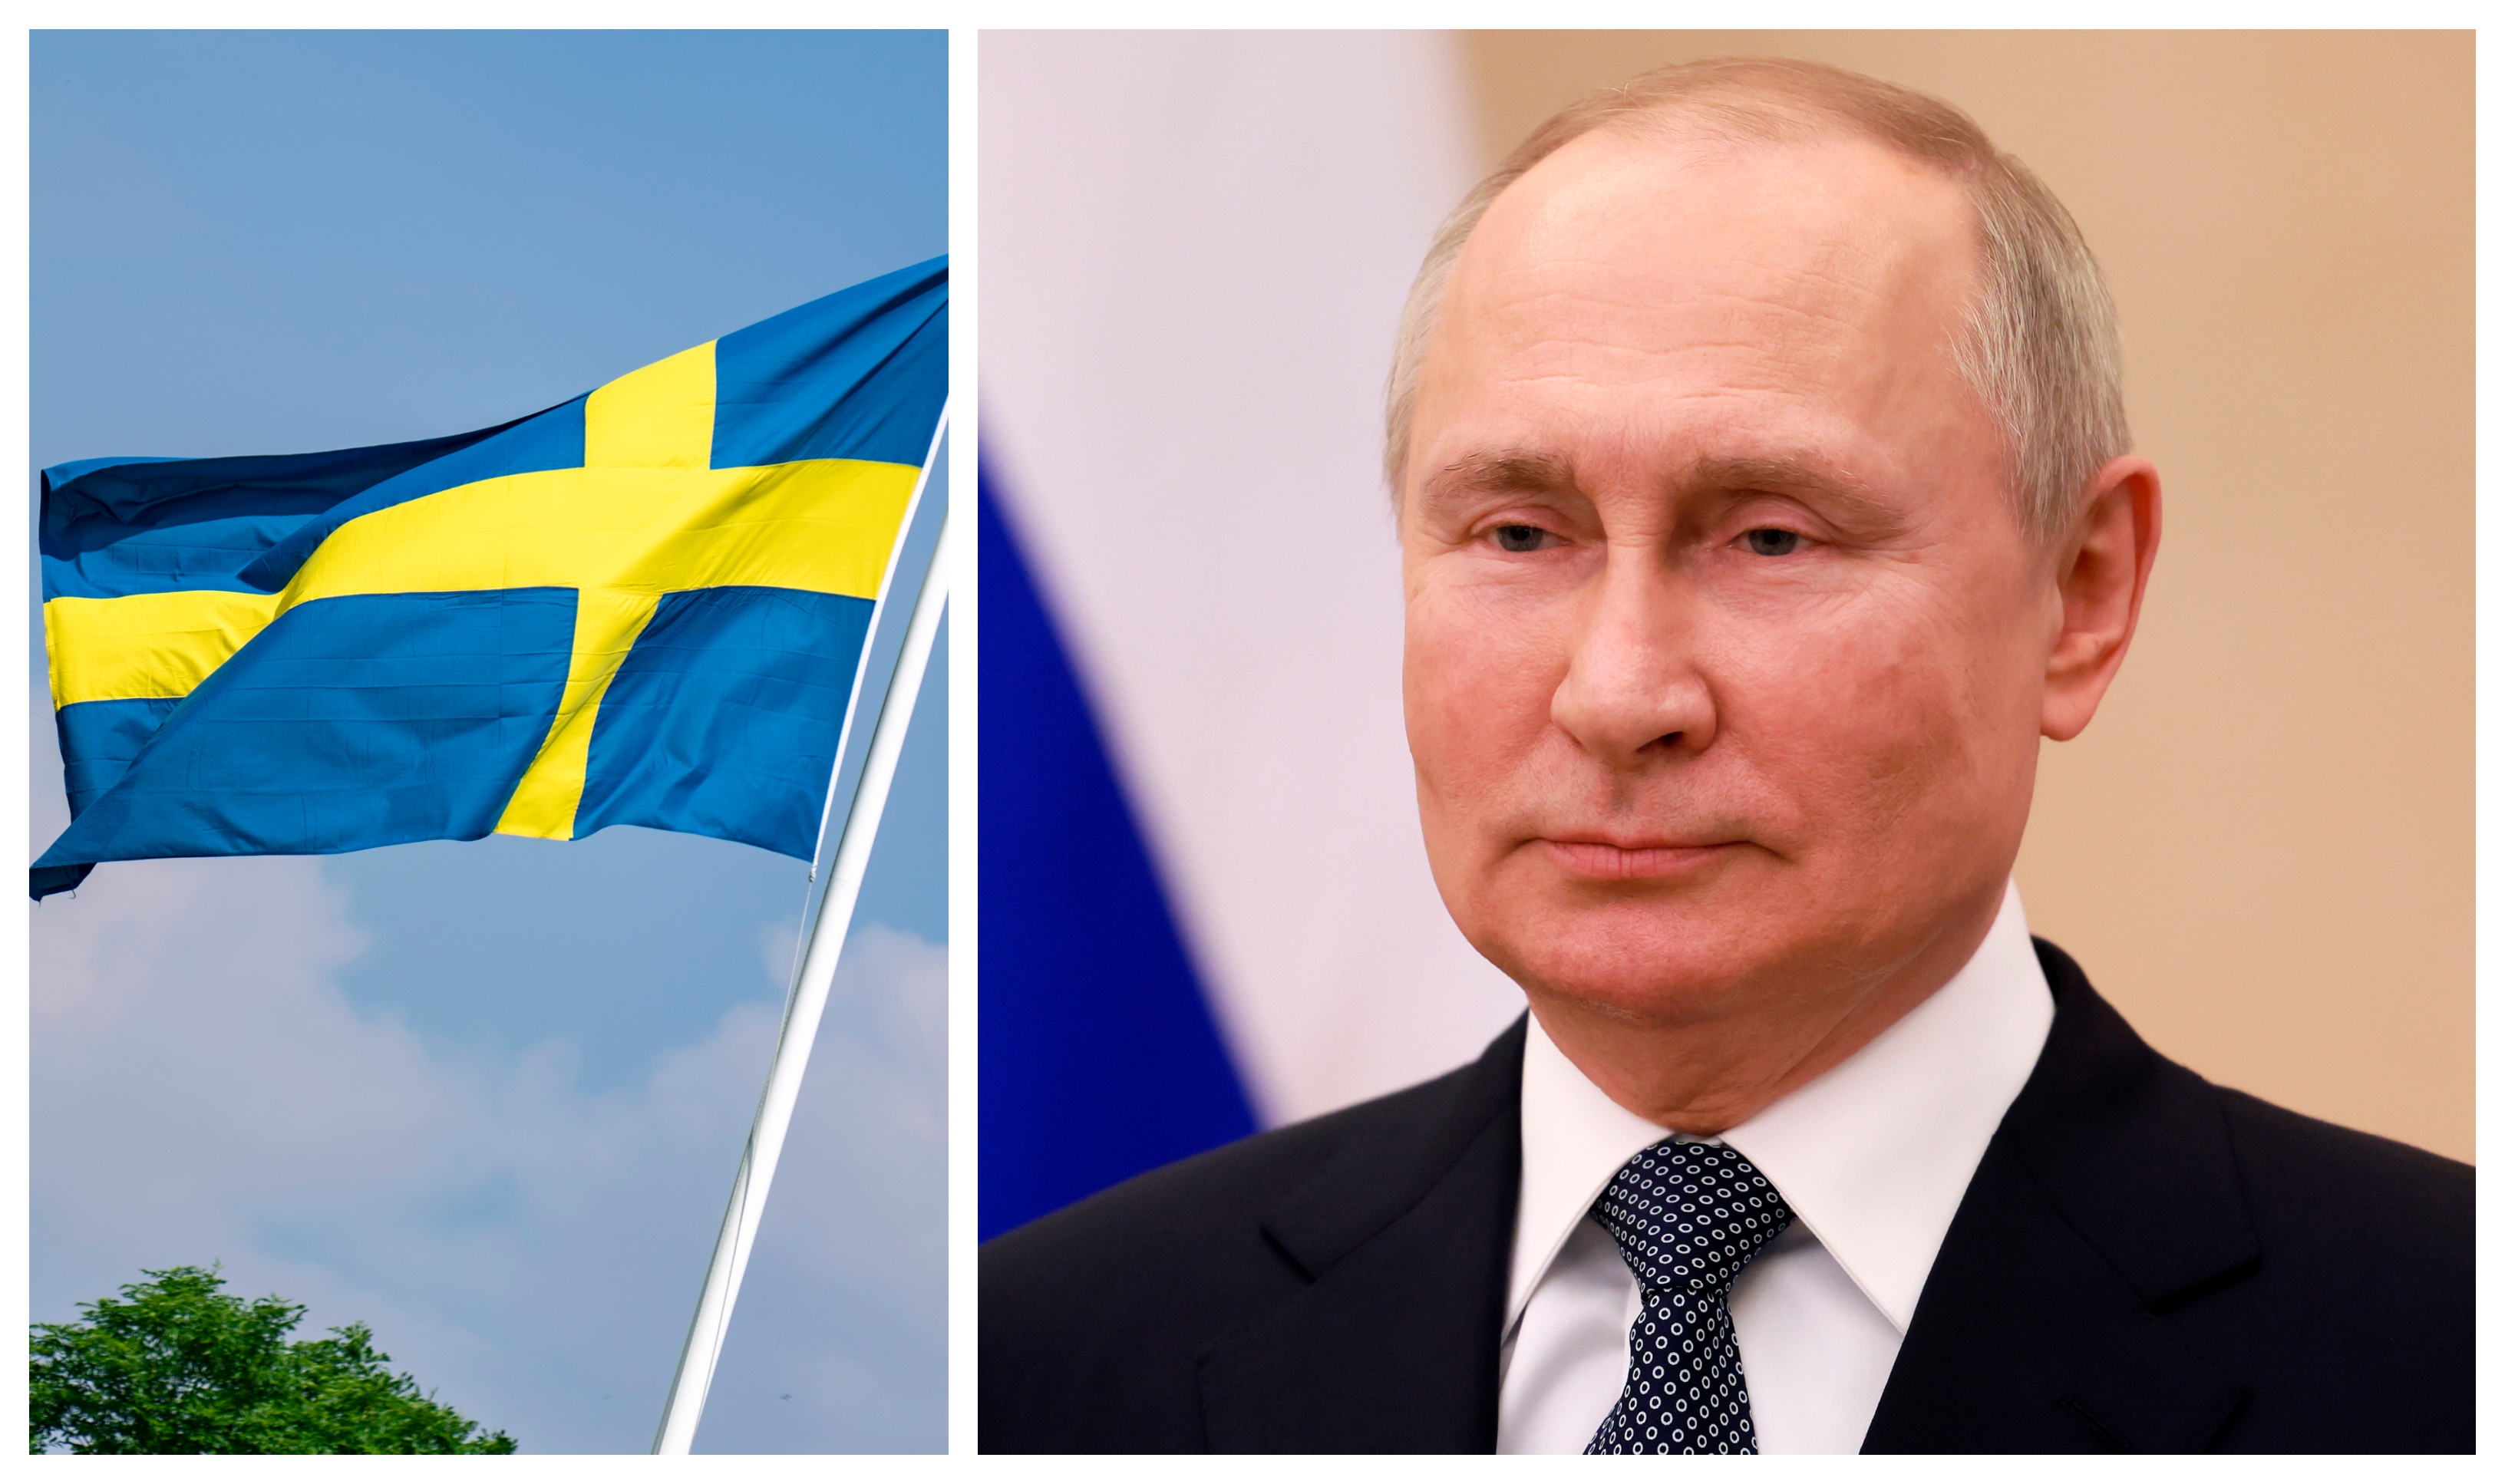 Sverige har nu skickat in en Natoansökan.